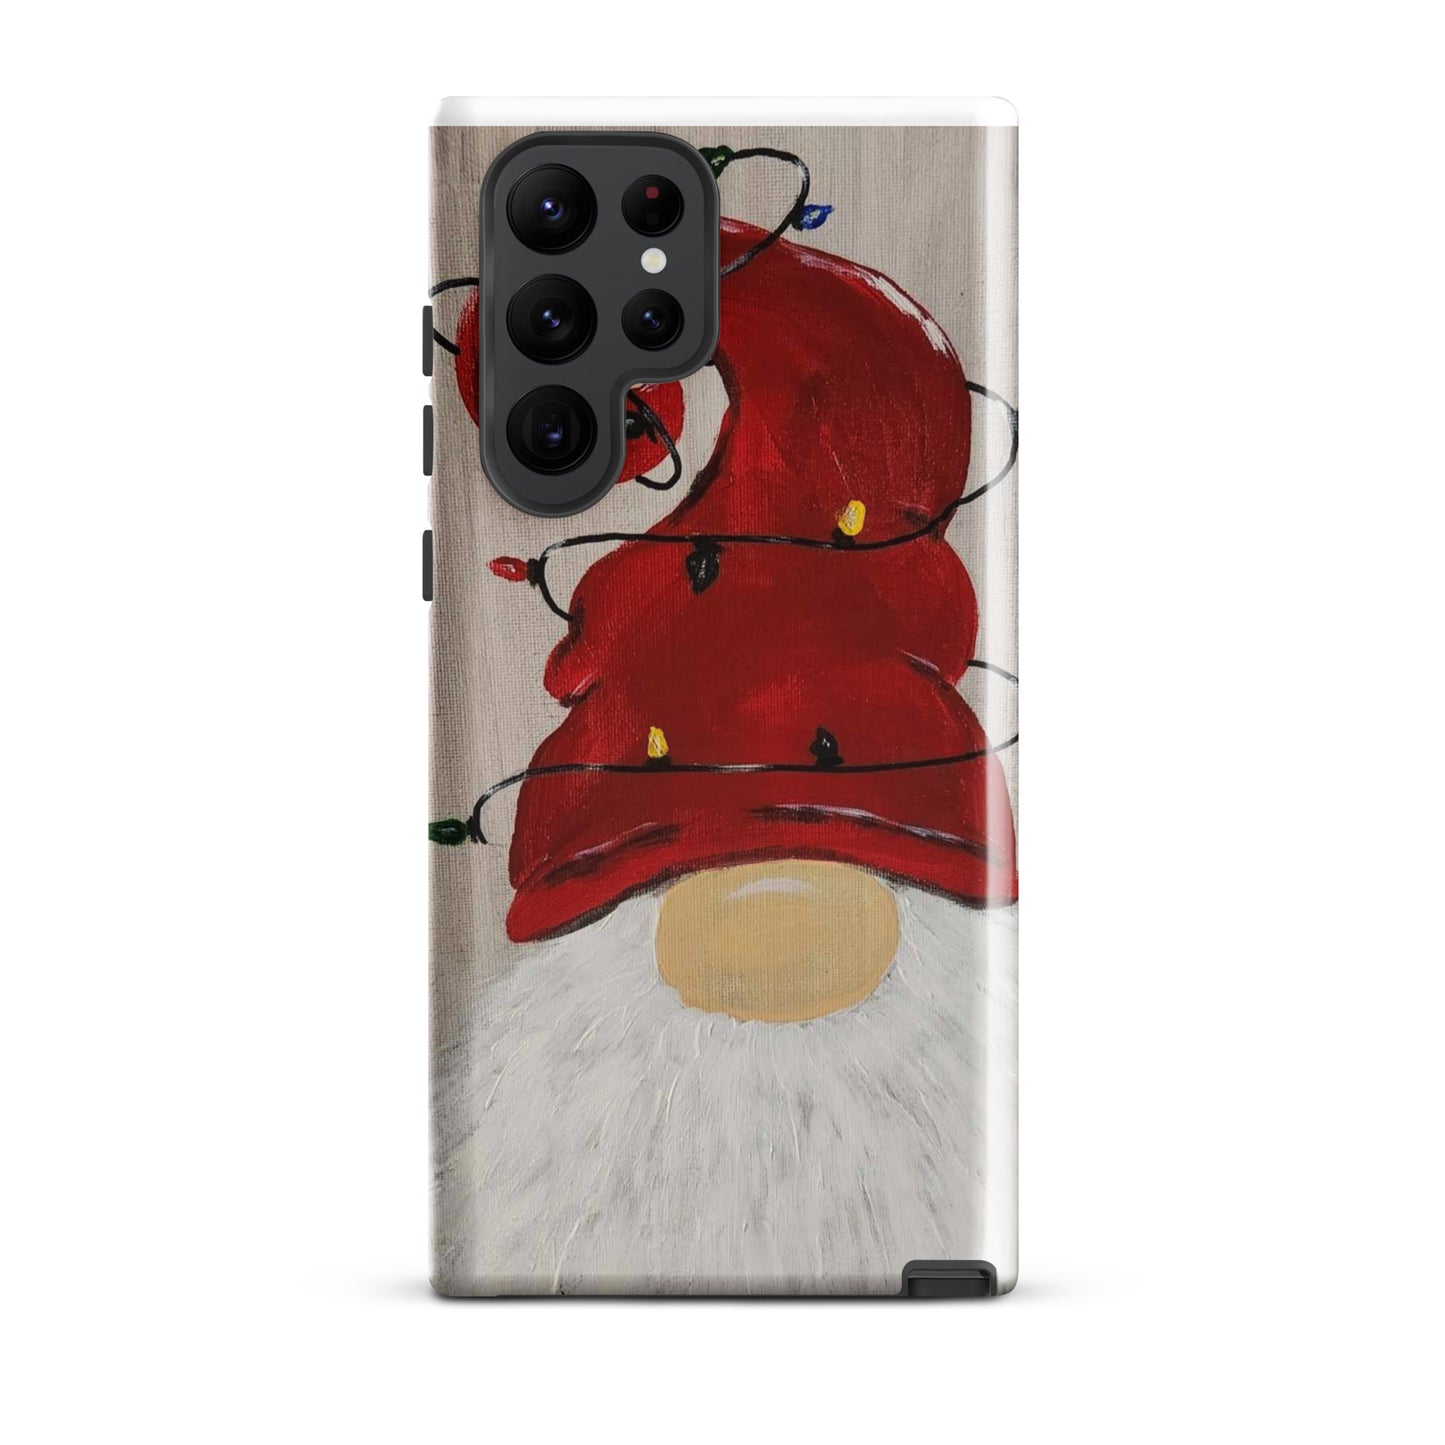 Jens Gnome Christmas - Tough case for Samsung®